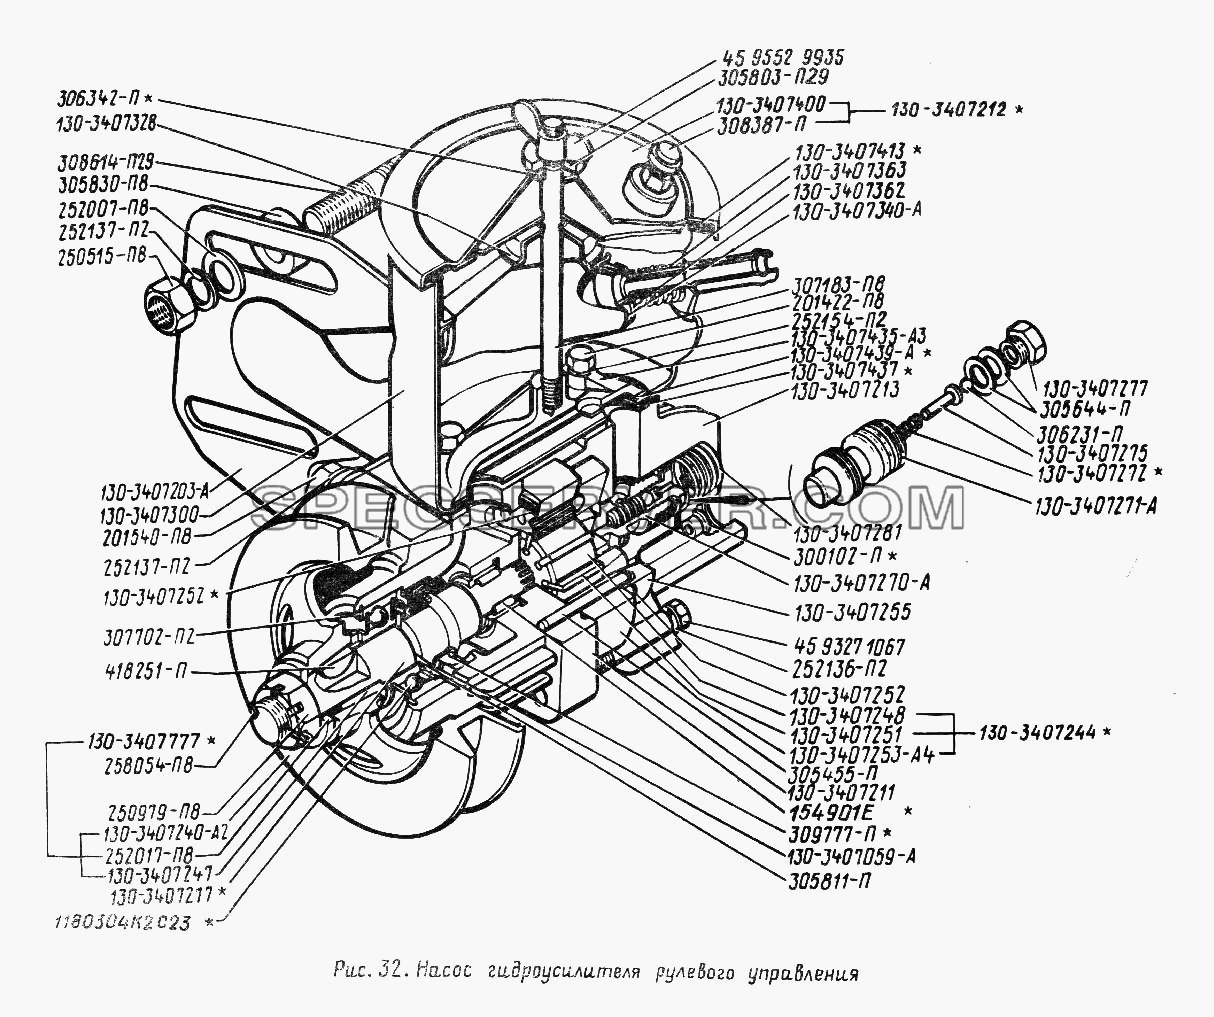 Насос гидроусилителя рулевого управления для ЗИЛА 431410 (130) (список запасных частей)